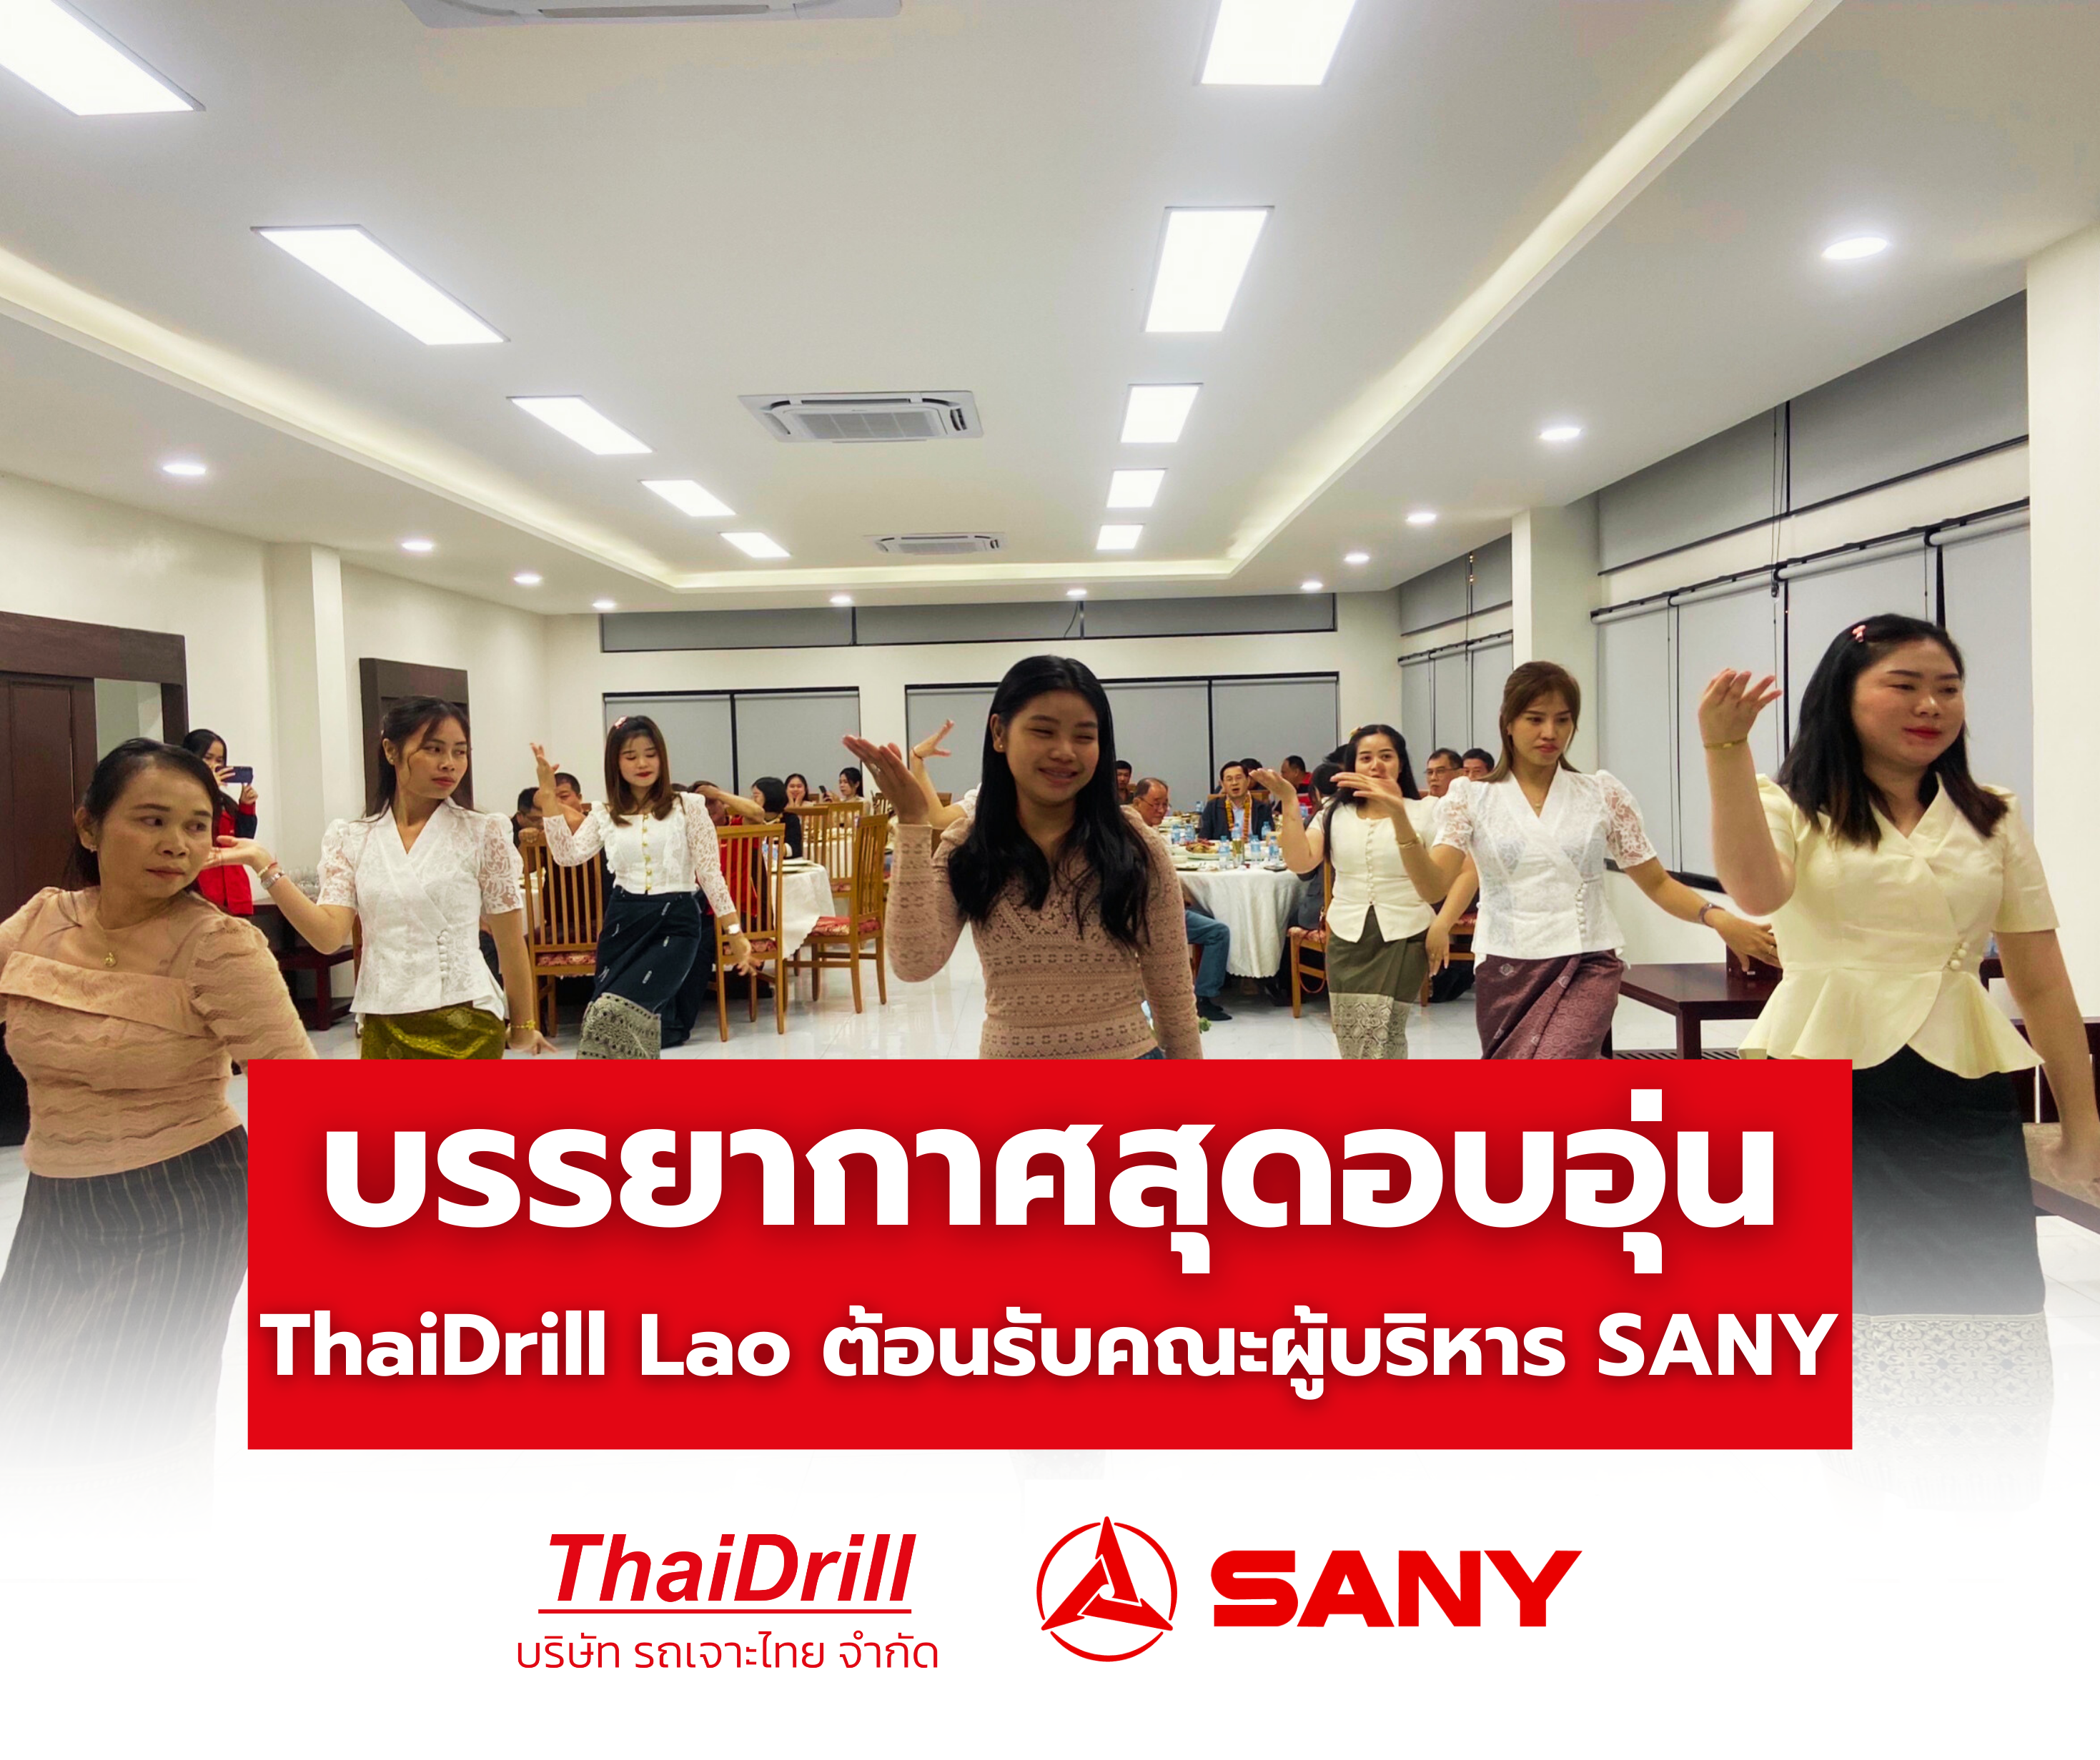 บรรยากาศสุดอบอุ่น ThaiDrill Lao จัดงานต้อนรับคณะผู้บริหาร SANY ณ เหมืองกะลึม เชกอง ส.ป.ป ลาว